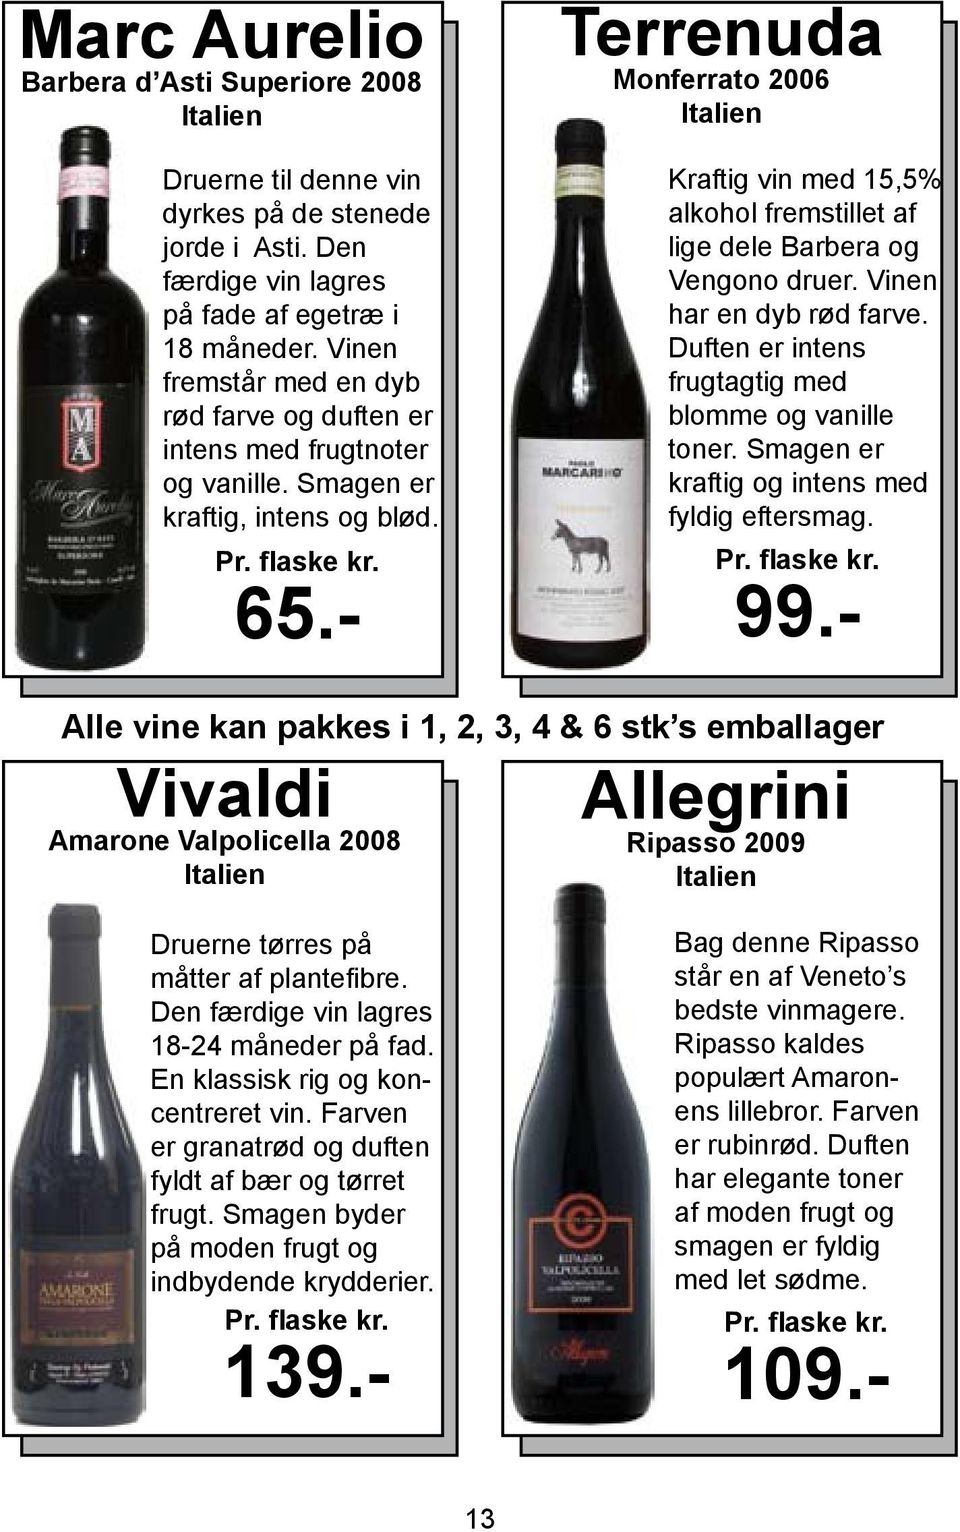 - Terrenuda Monferrato 2006 Kraftig vin med 15,5% alkohol fremstillet af lige dele Barbera og Vengono druer. Vinen har en dyb rød farve. Duften er intens frugtagtig med blomme og vanille toner.